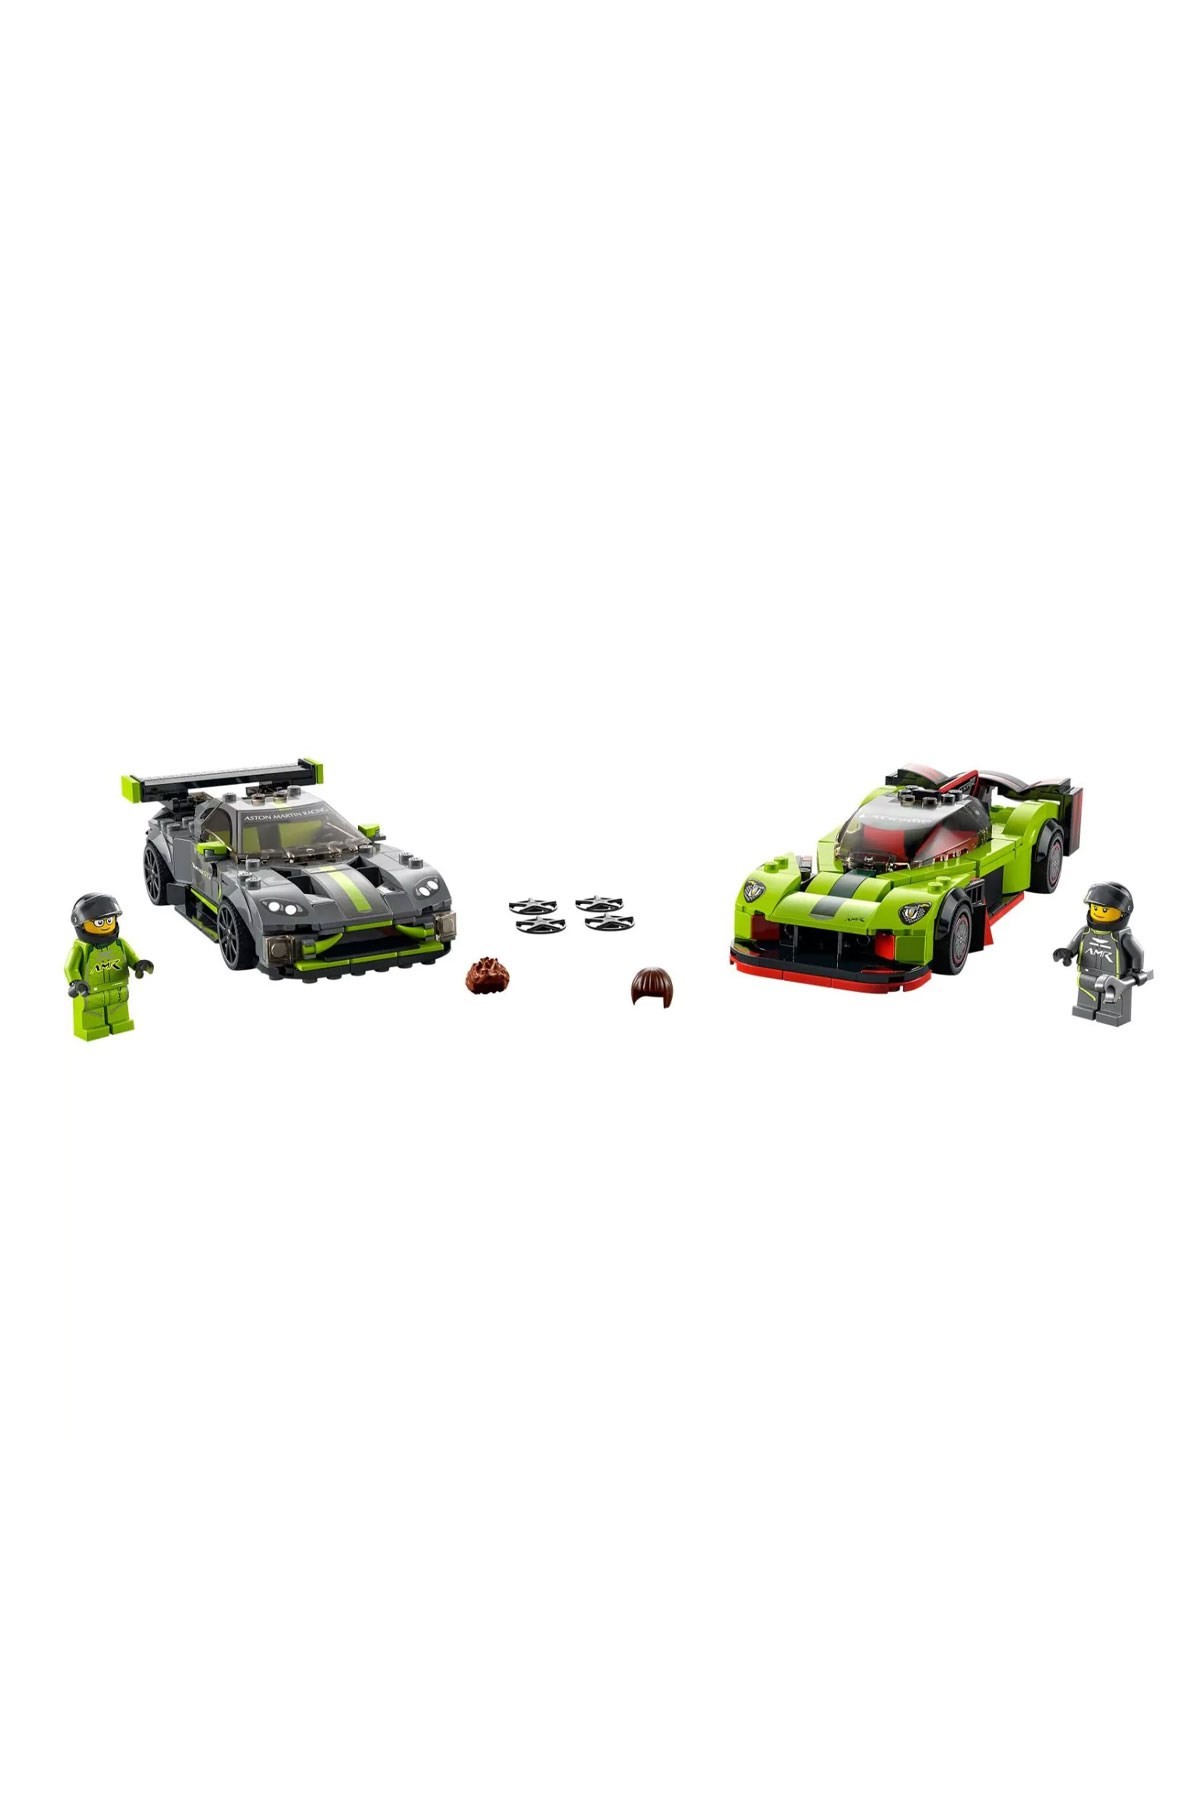 Lego Speed Champions Aston Martin Valkyrie AMR Pro ve Aston Martin Vantage GT3 76910